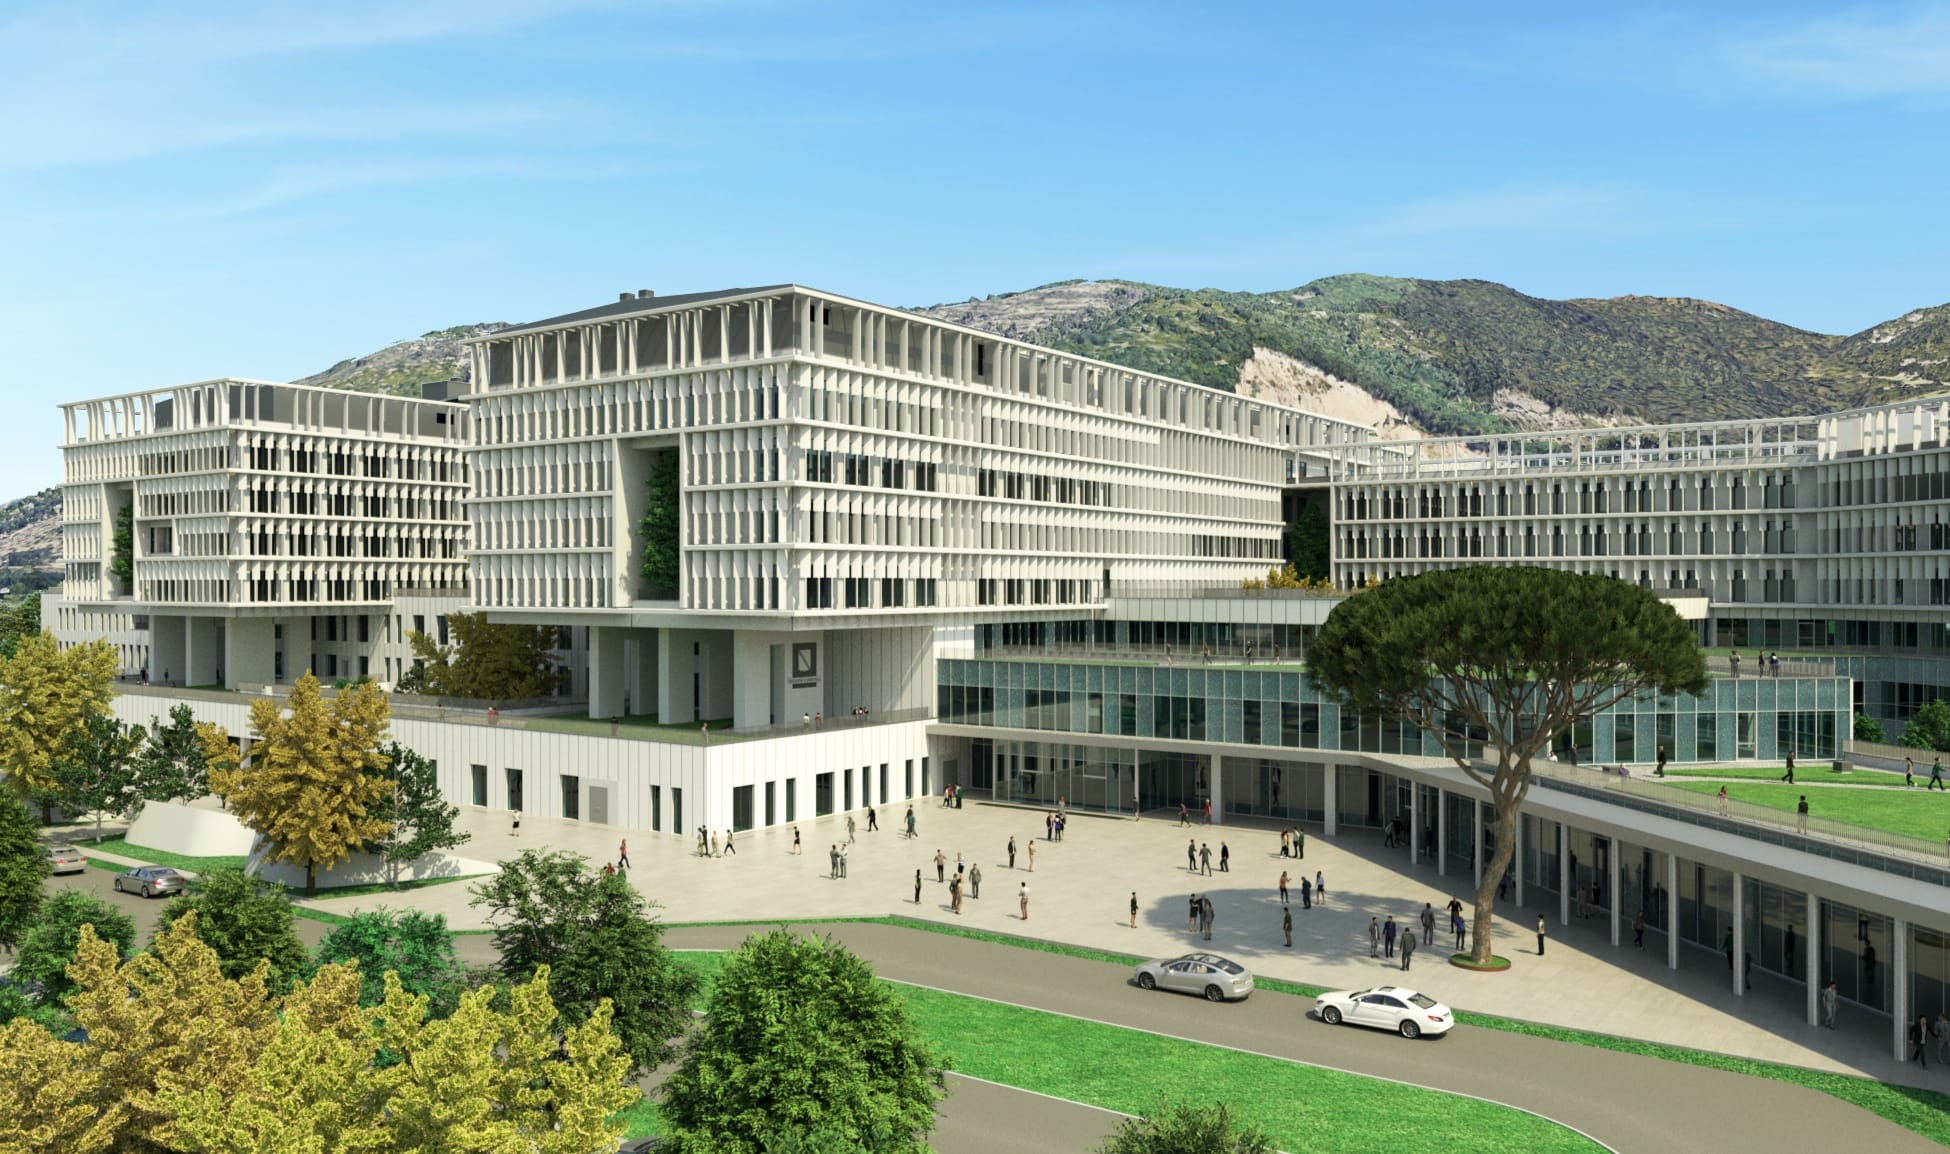 Nuovo Ospedale Ruggi D’Aragona A Salerno: La Regione Campania Annuncia La Gara Di Appalto Per 368 Milioni Di Euro